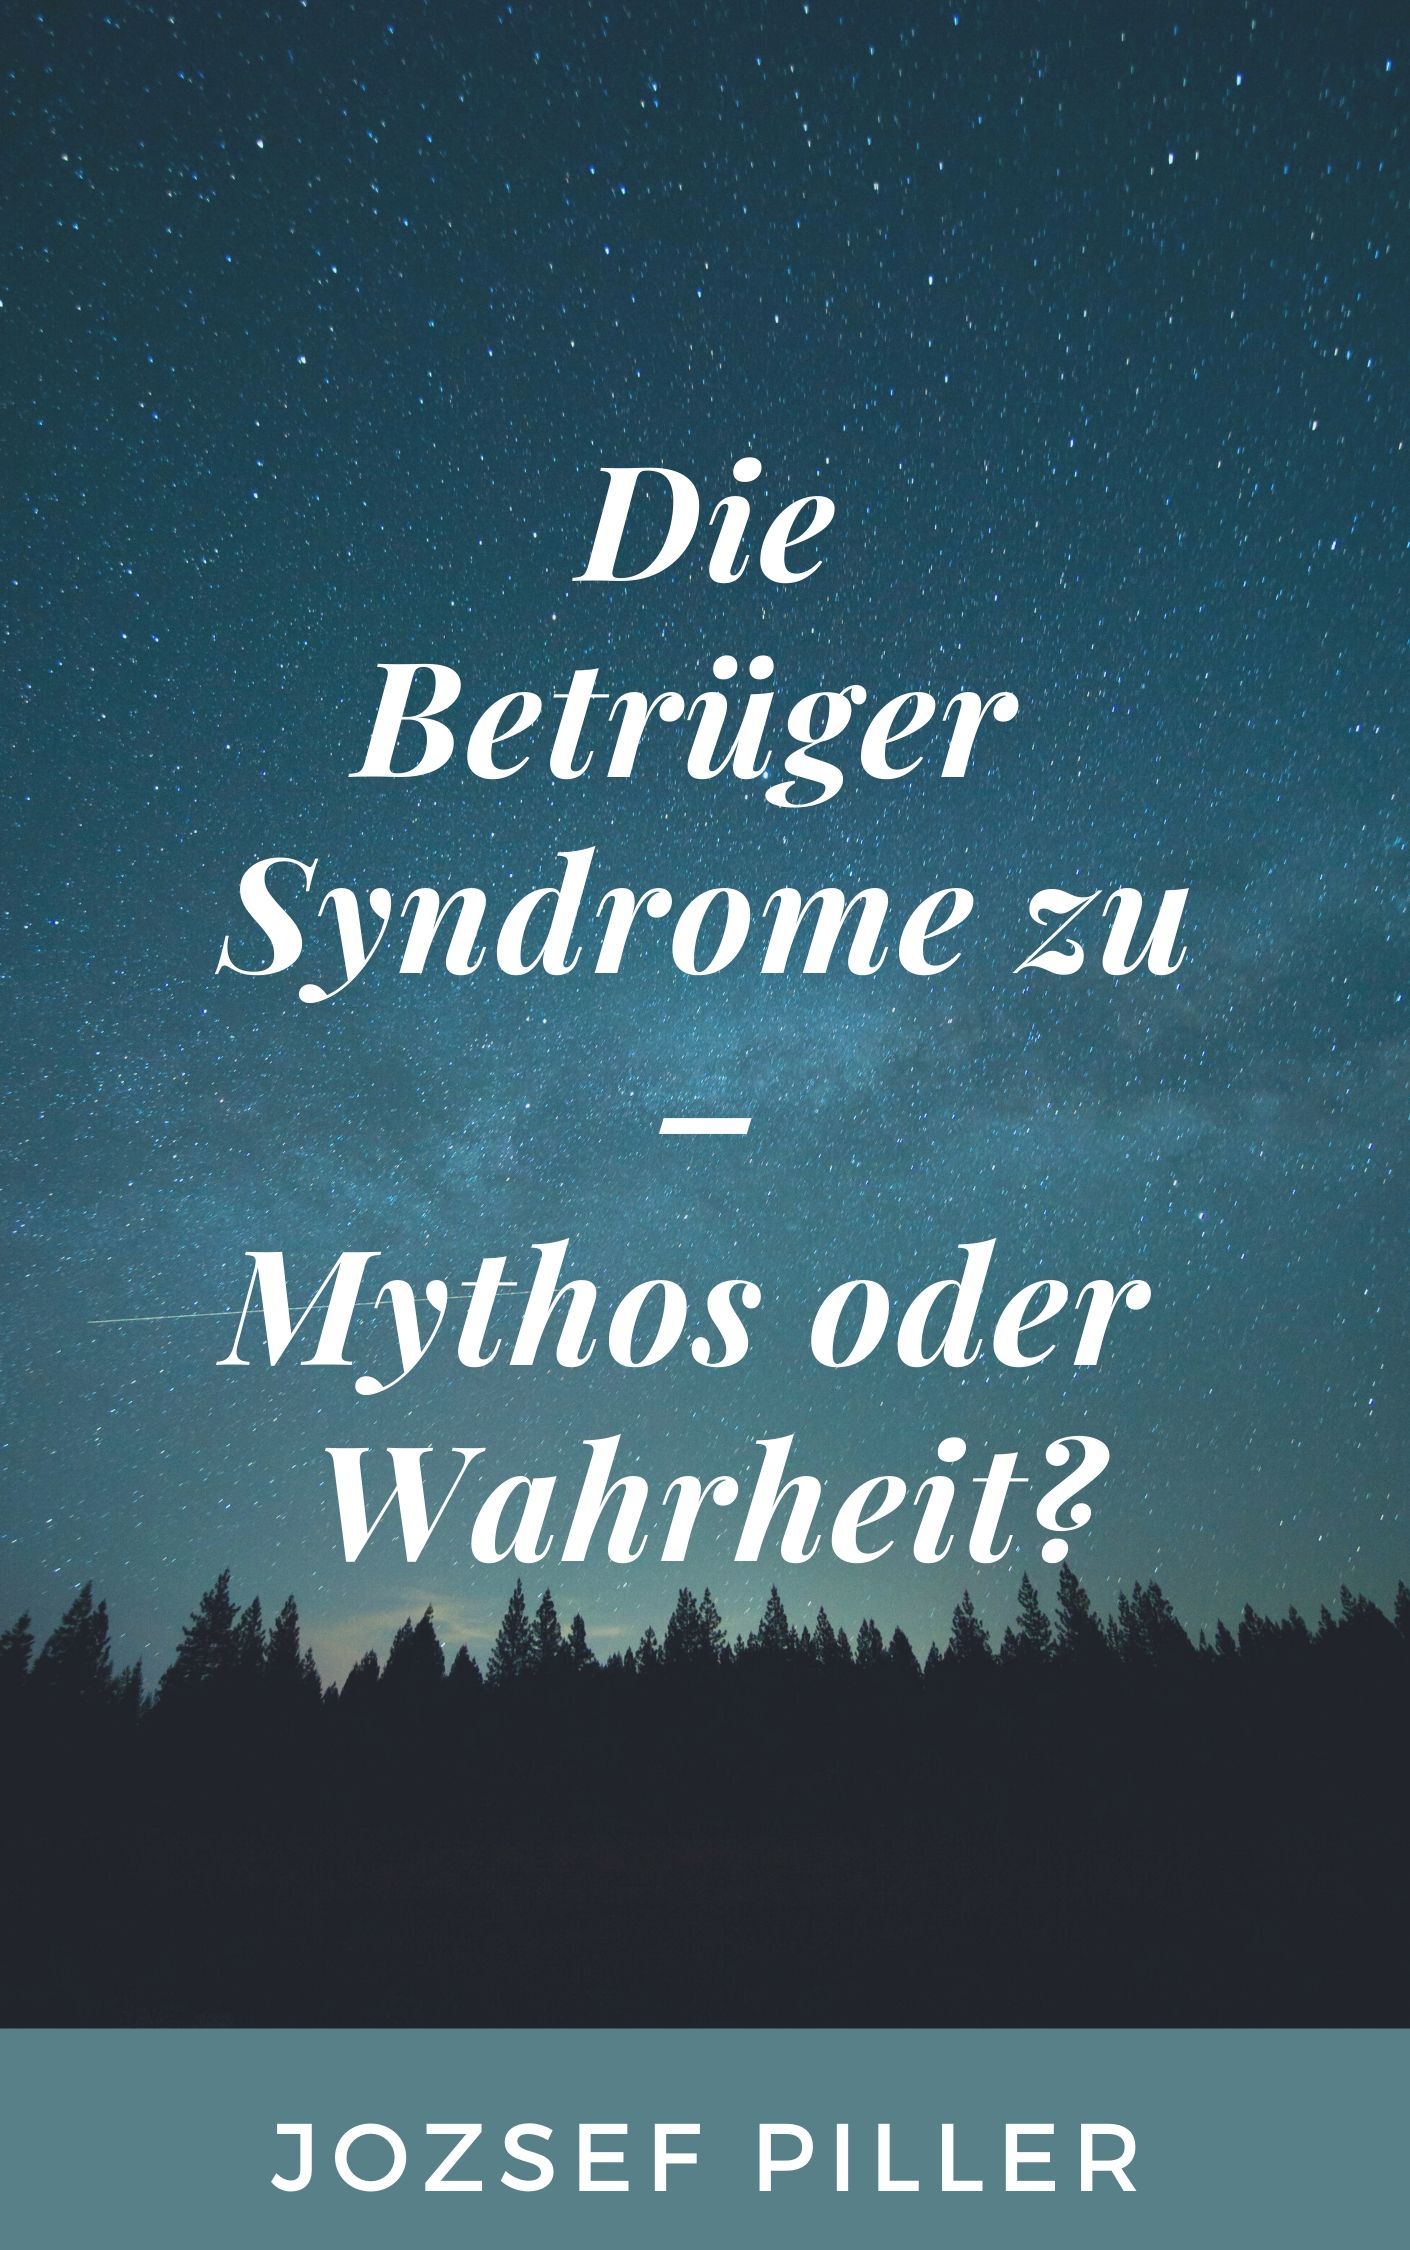 Die Betrüger Syndrome zu - Mythos oder Wahrheit?, e-bok av Jozsef Piller